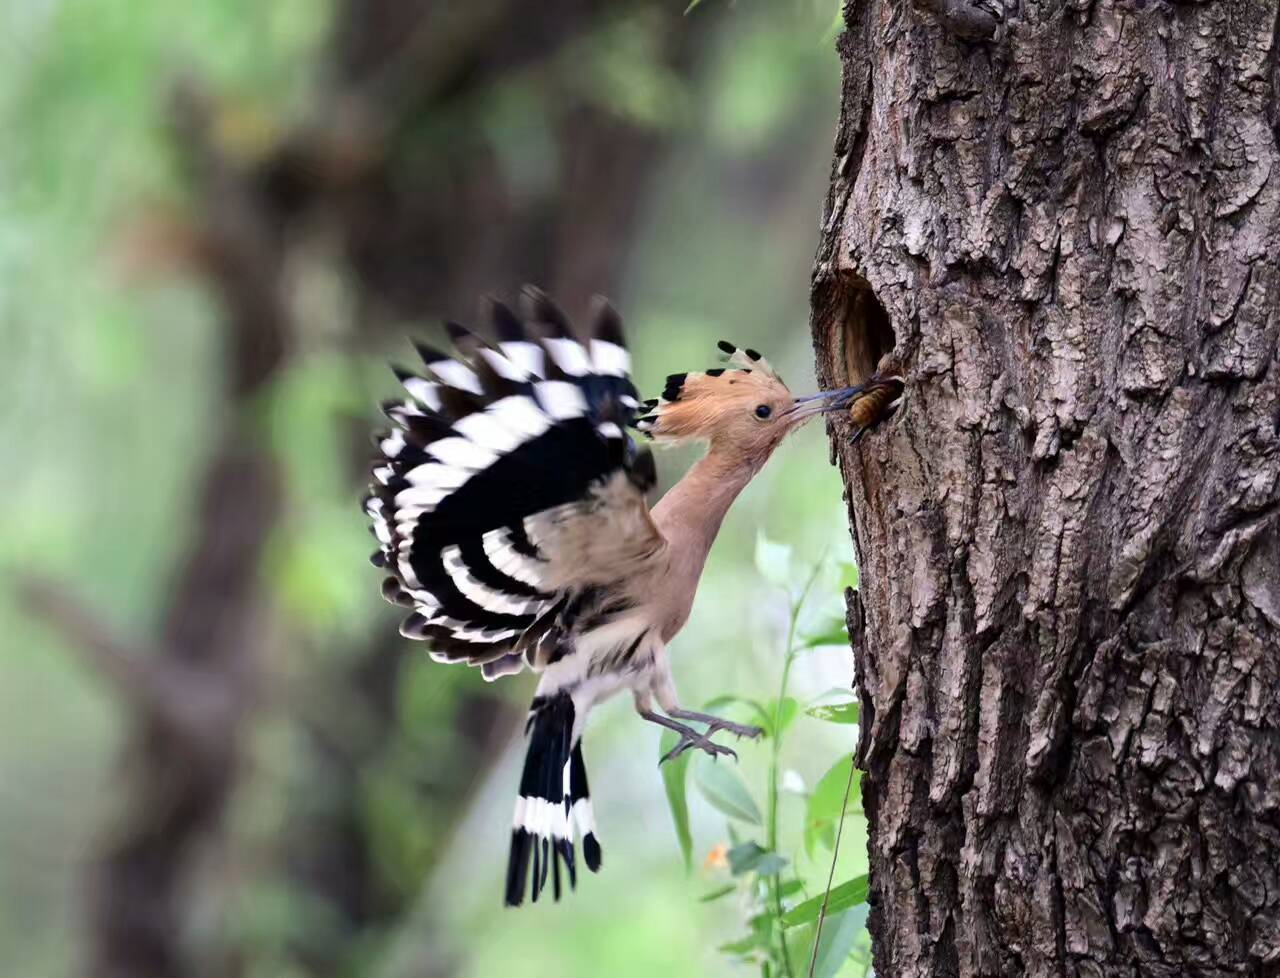 螳螂捕蝉黄雀在后 | 探索大自然的奧祕 藉由攝影畫面 捕捉生態美 | DIGIPHOTO